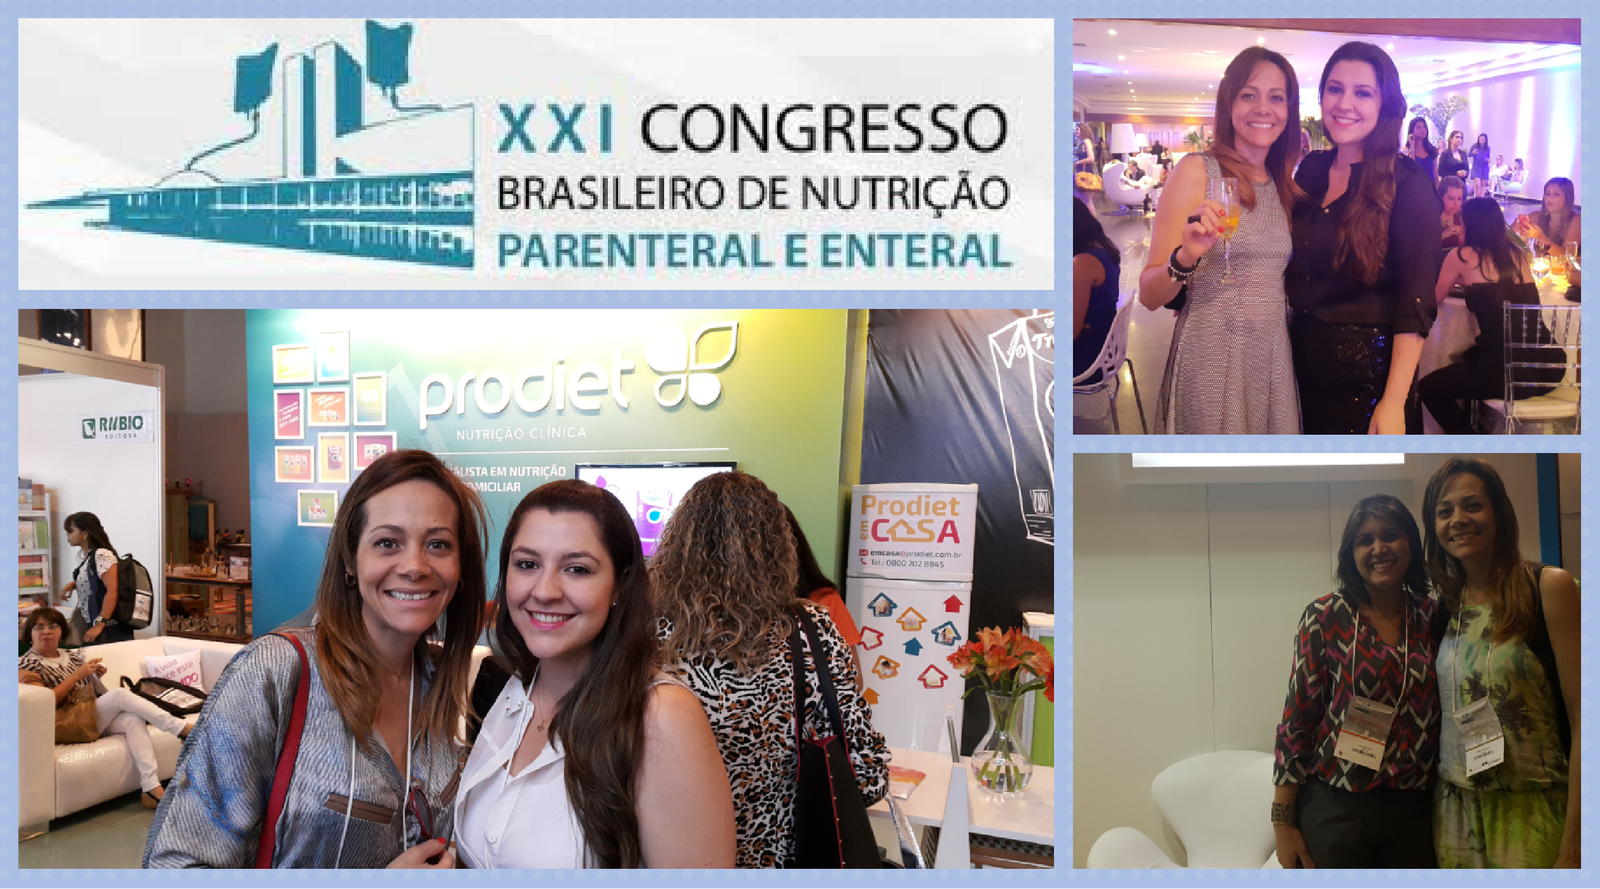 Congresso de Brasileiro de Nutrição Parenteral e Enteral – Brasília